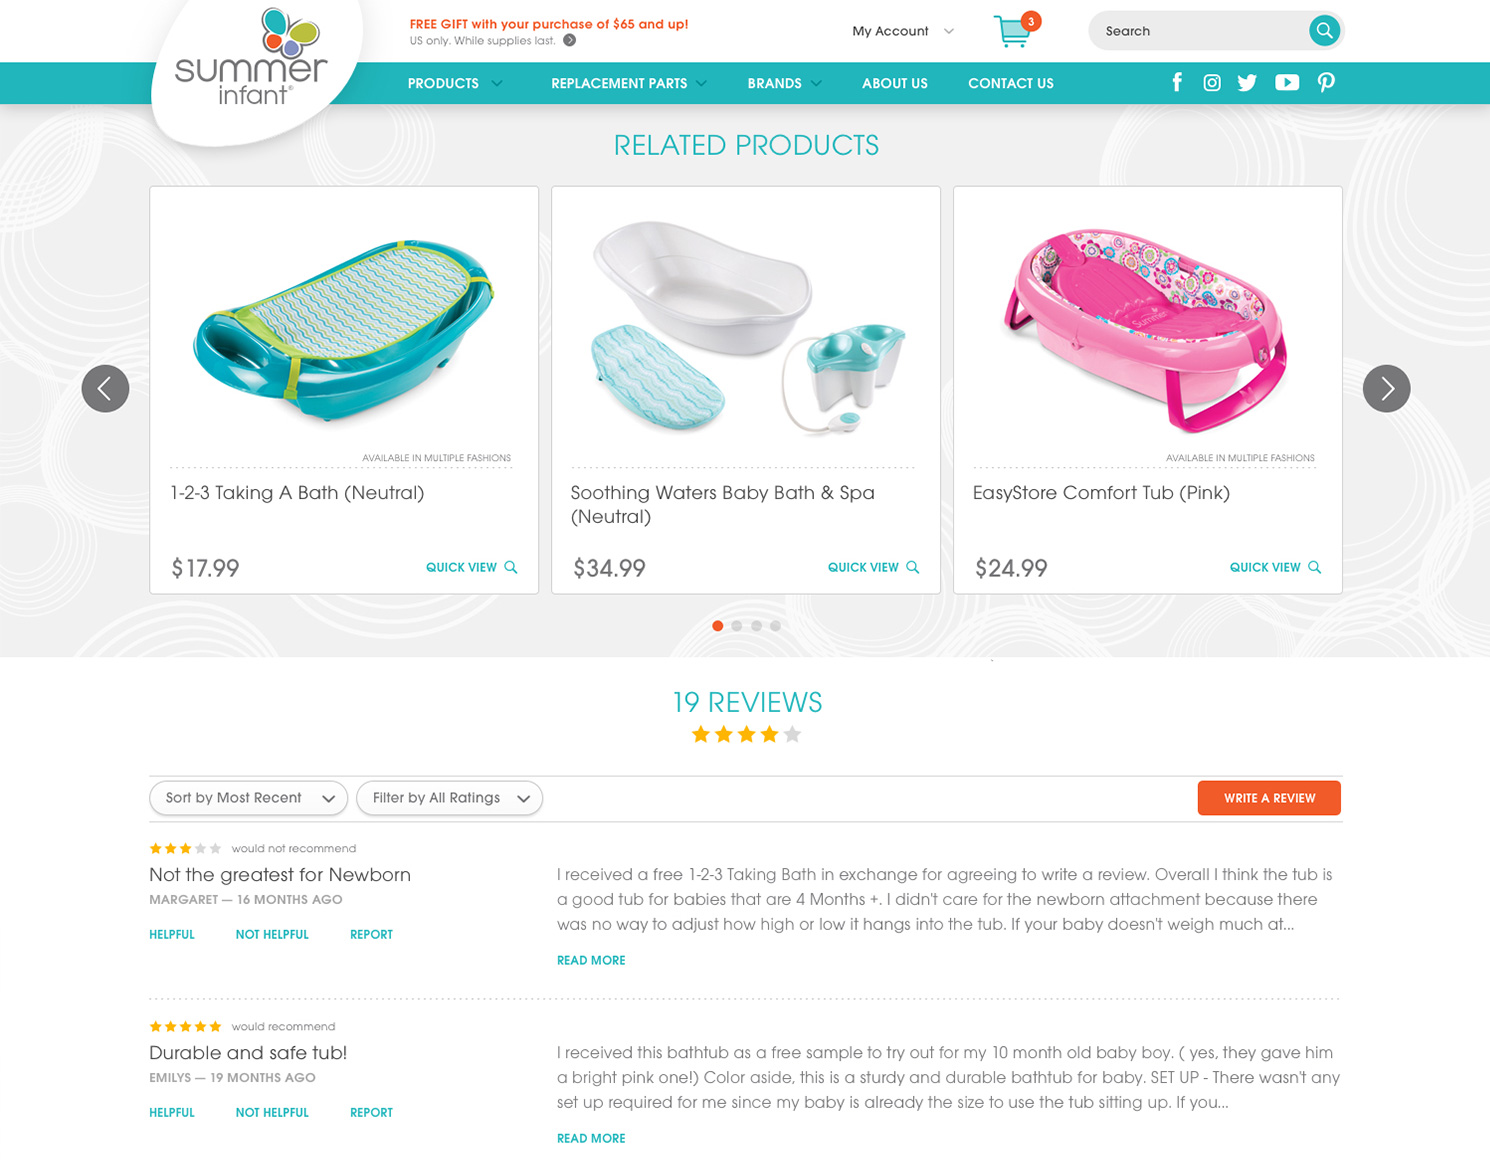 summer infant website design showing e-commerce section